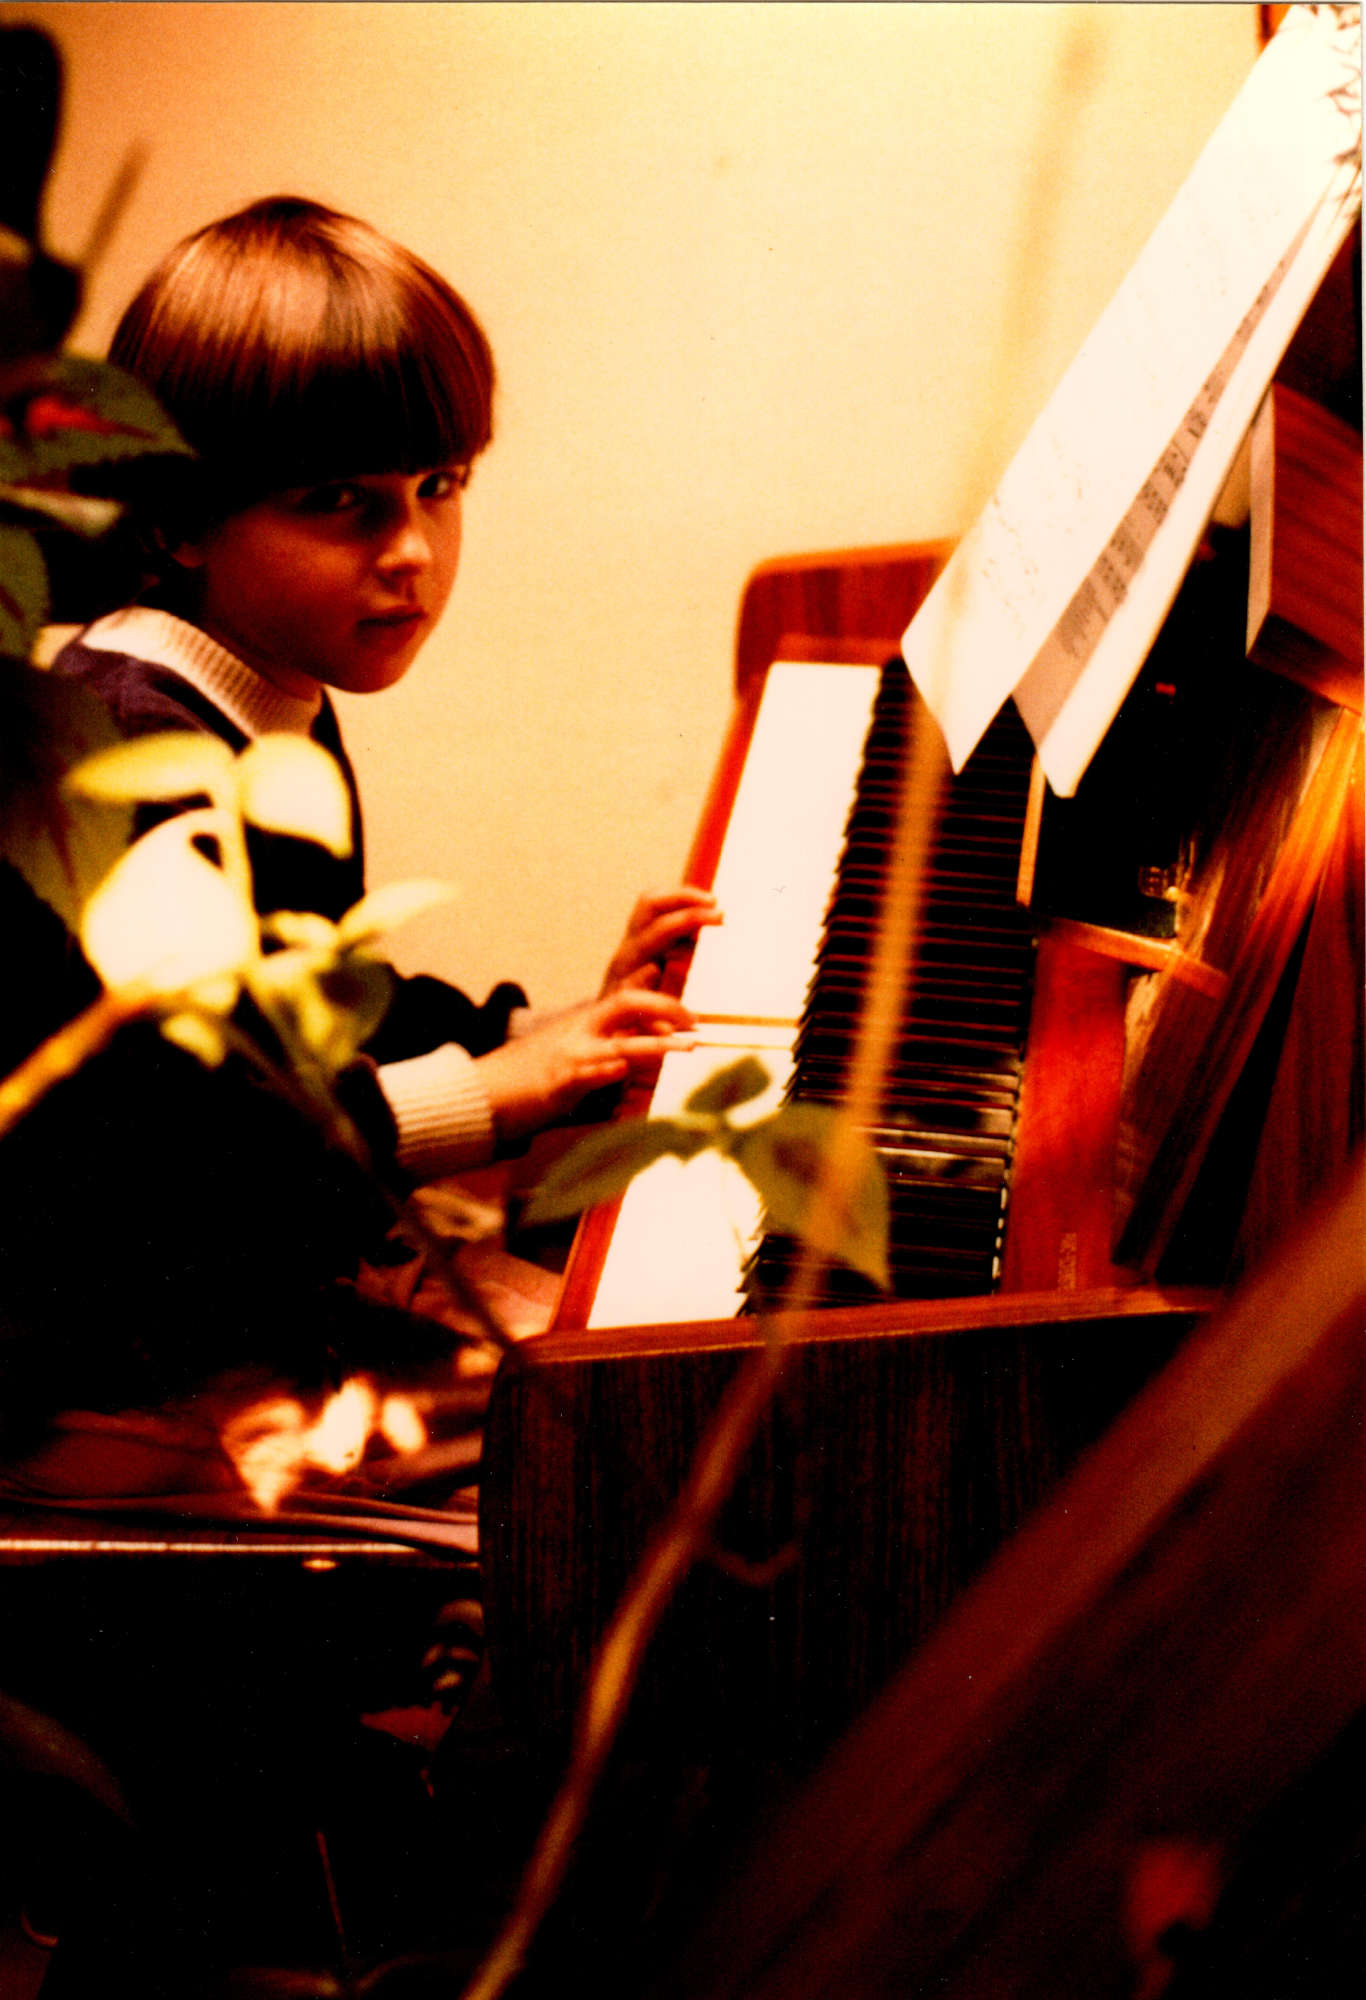 Die fünfjährige Martina sitzt mit Pagenschnitt am Klavier und schaut schüchtern lächelnd in die Kamera